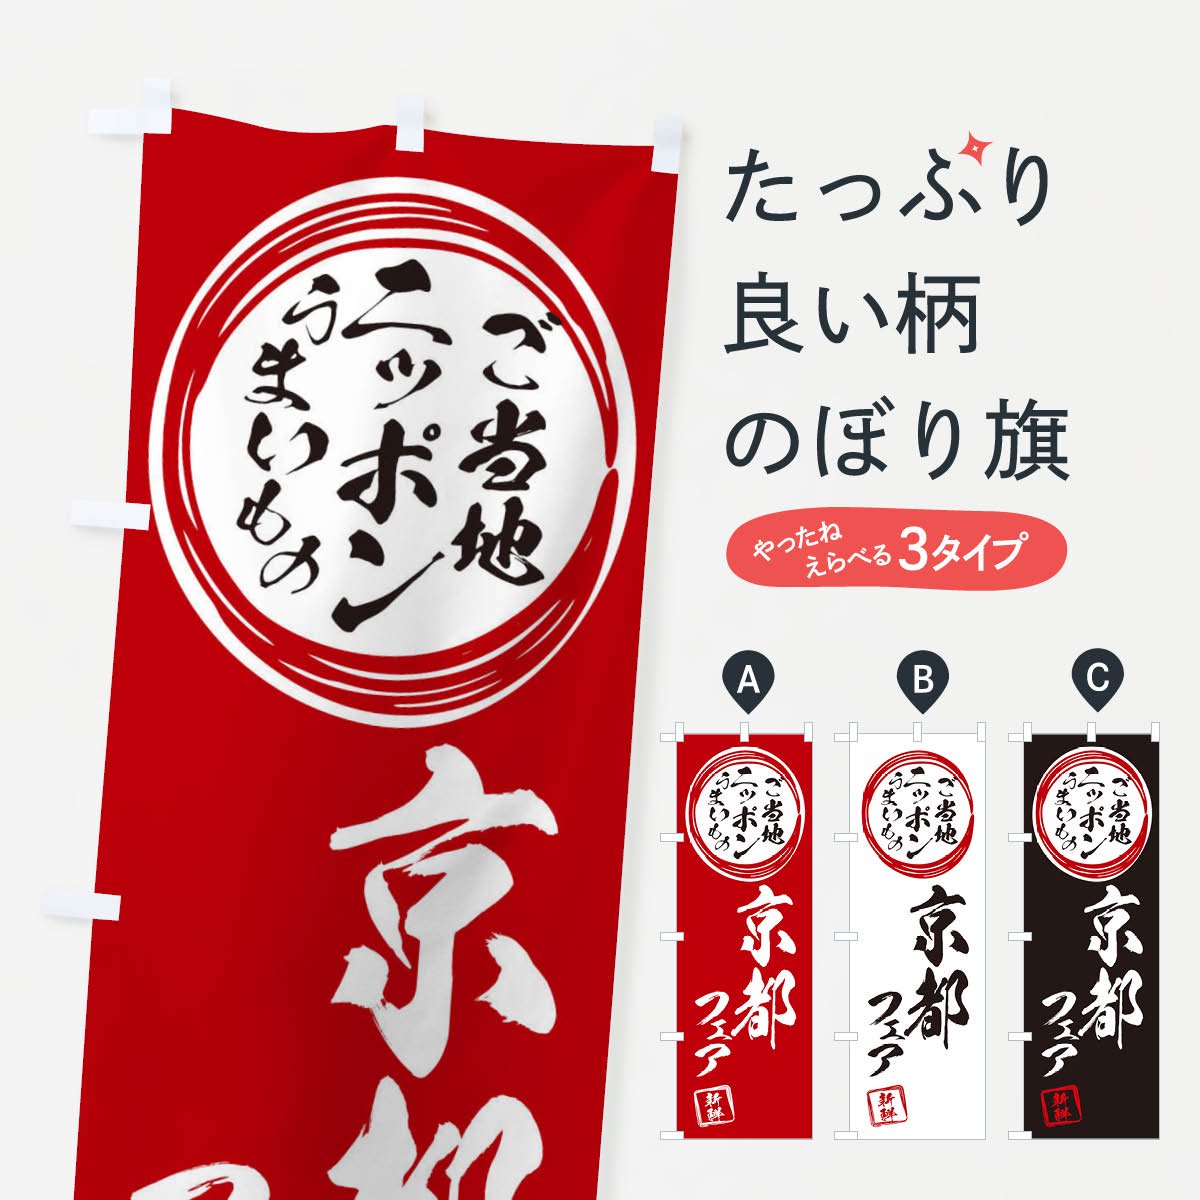 のぼり旗 2枚セット 京都物産展 (紫) BU-1047 - 店舗用品